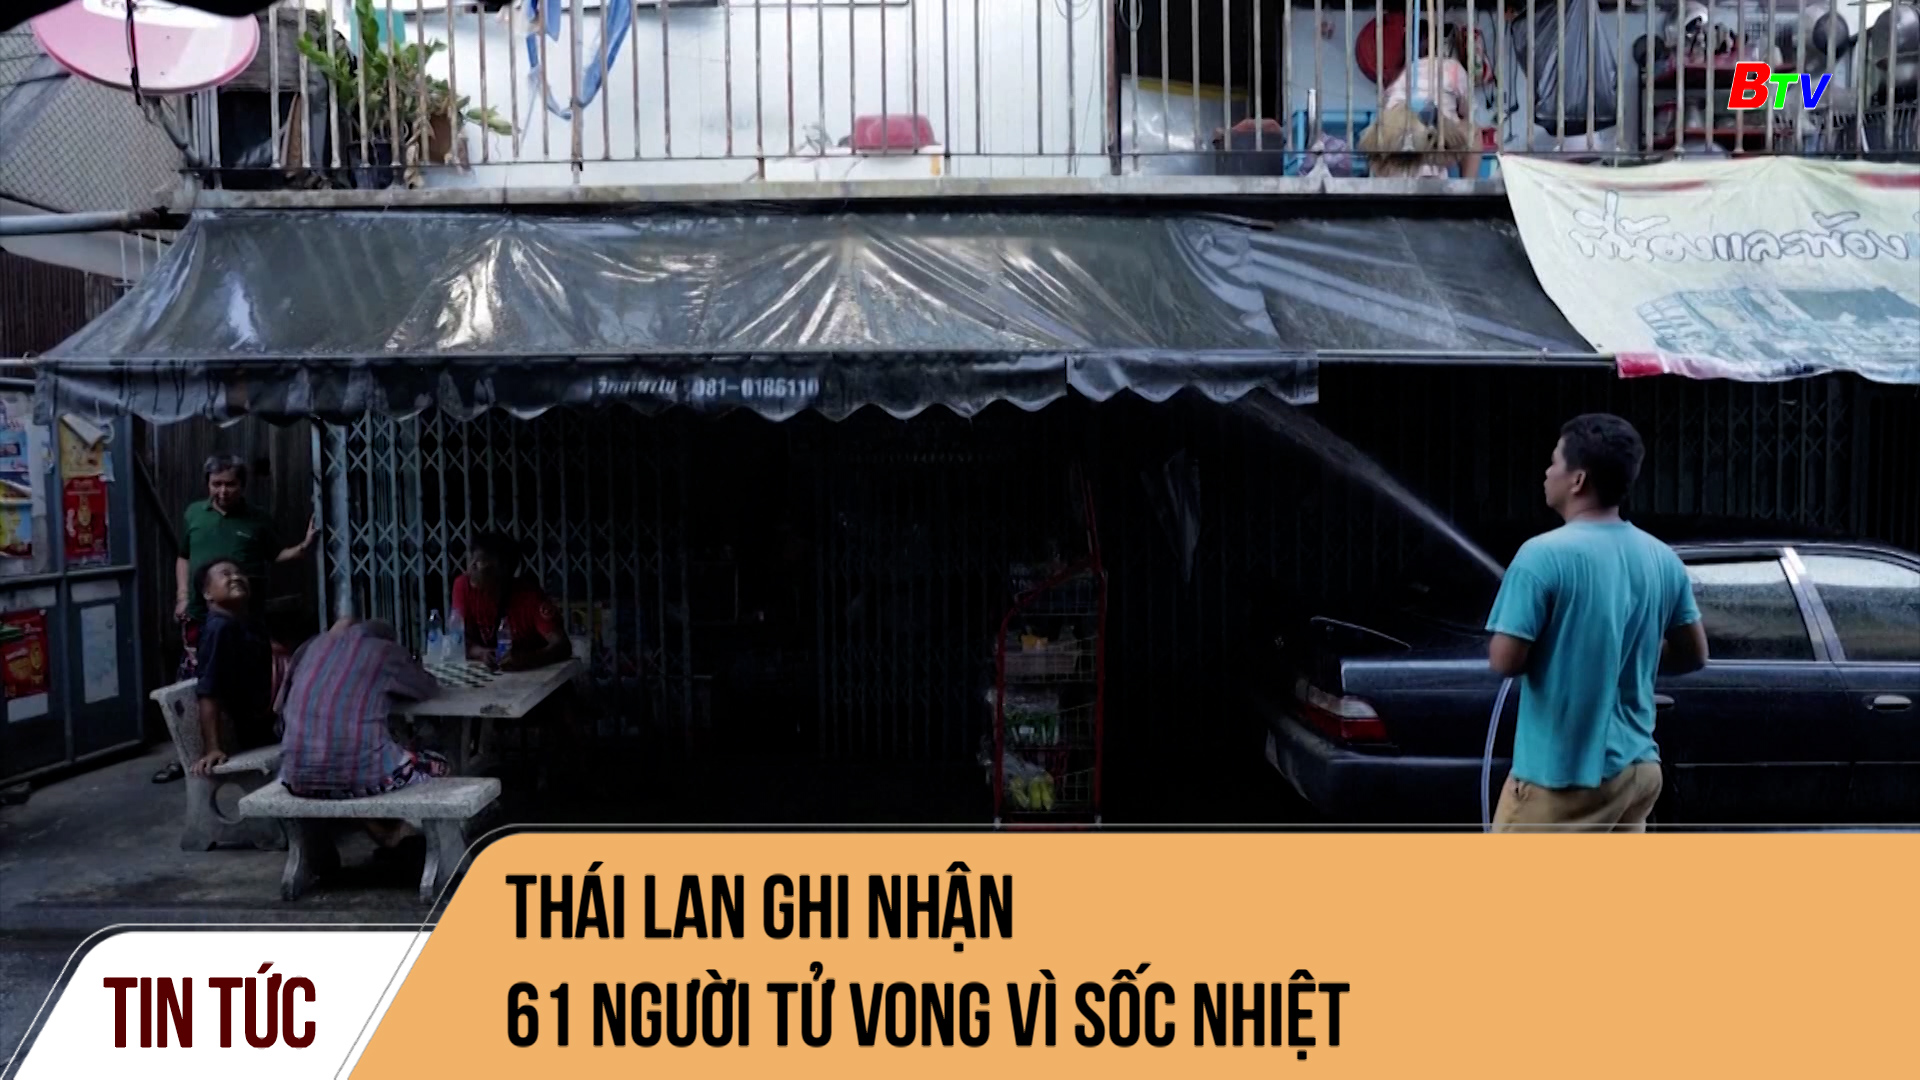 Thái lan ghi nhận 61 người tử vong vì sốc nhiệt